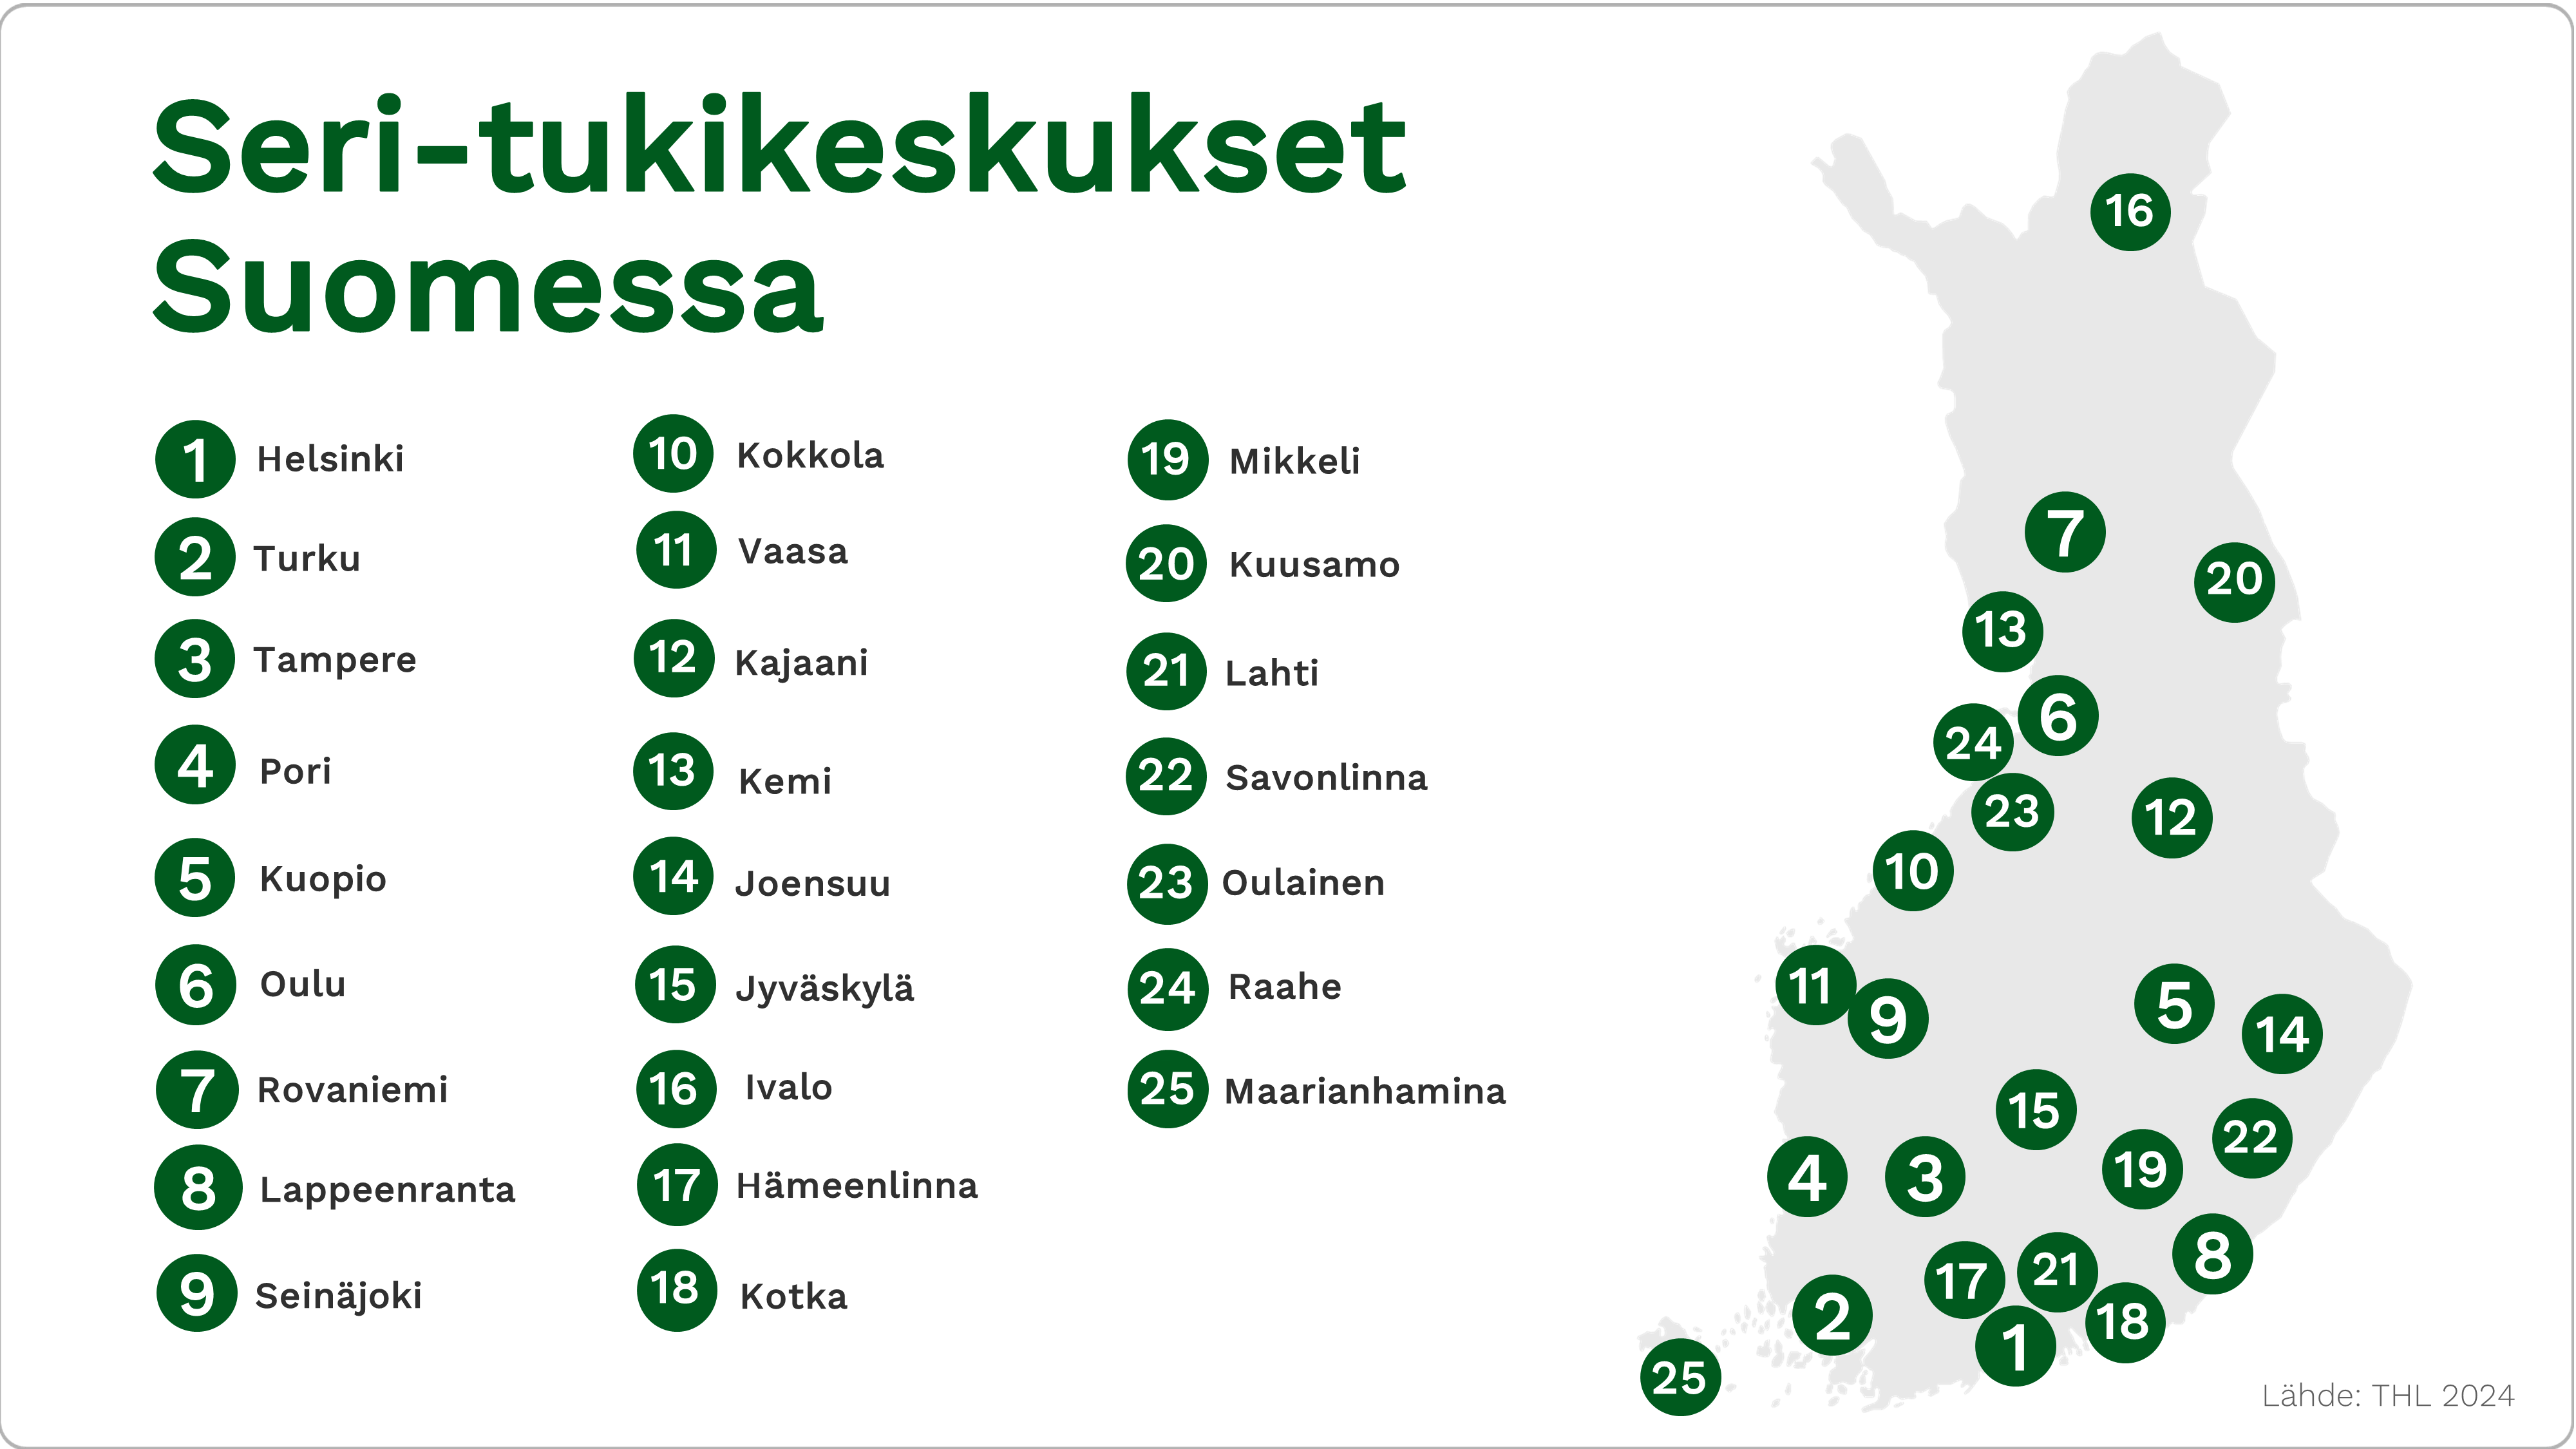 Seri-tukikeskukset Suomessa